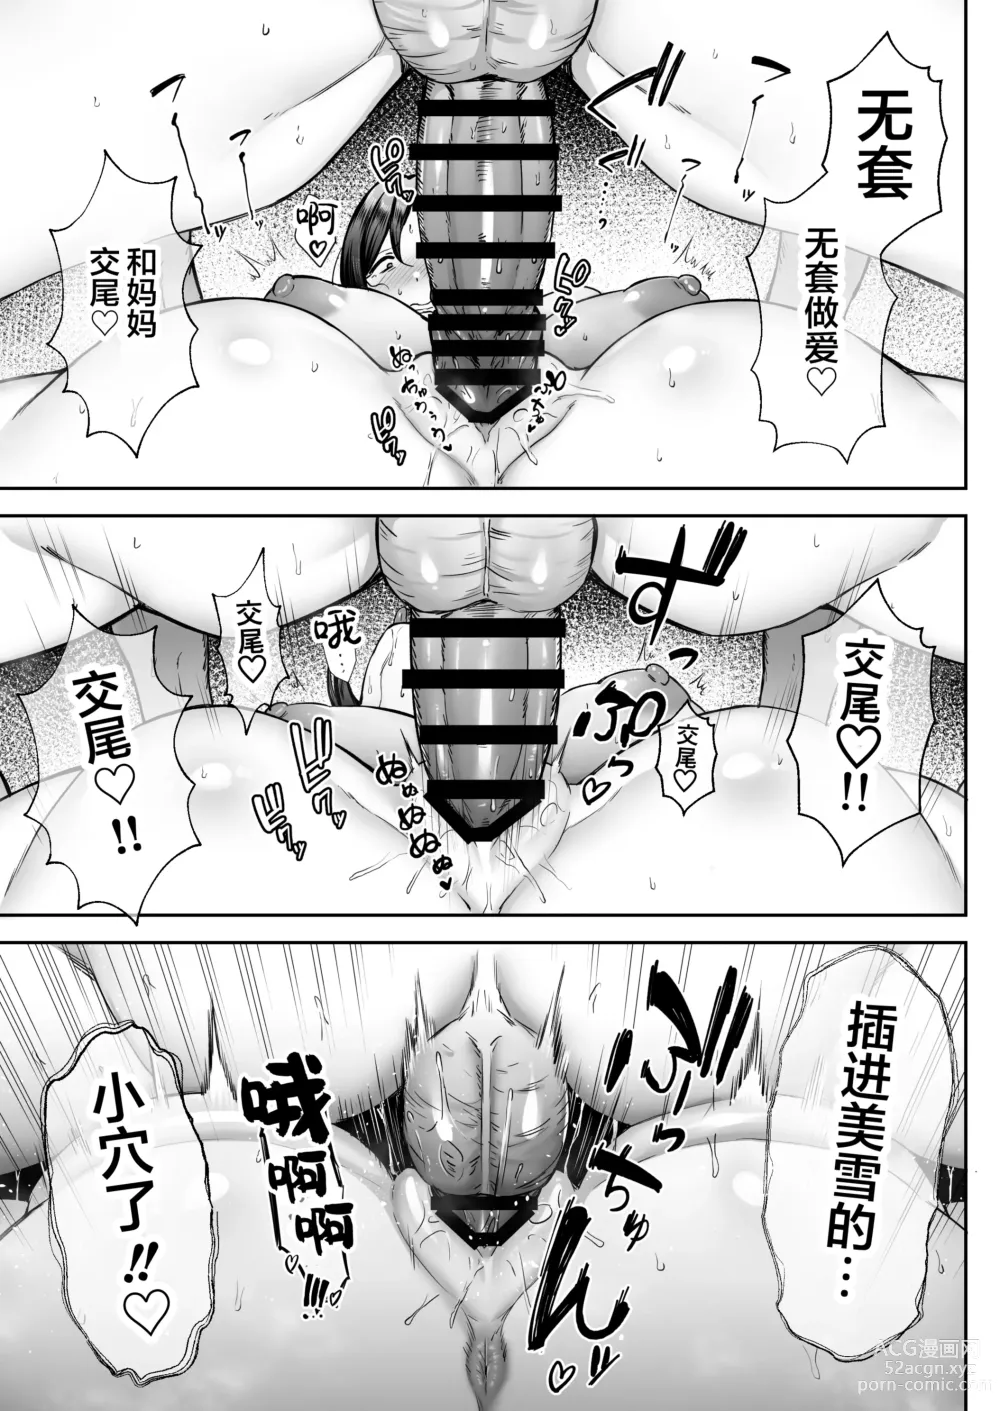 Page 39 of manga [Golden Bazooka (Gagarin Yoshi) Ichiban Mimoto de Eroi Mesuki ~ Haha Dakedo, Shiko Saru Musuko ni Komatteimasu]